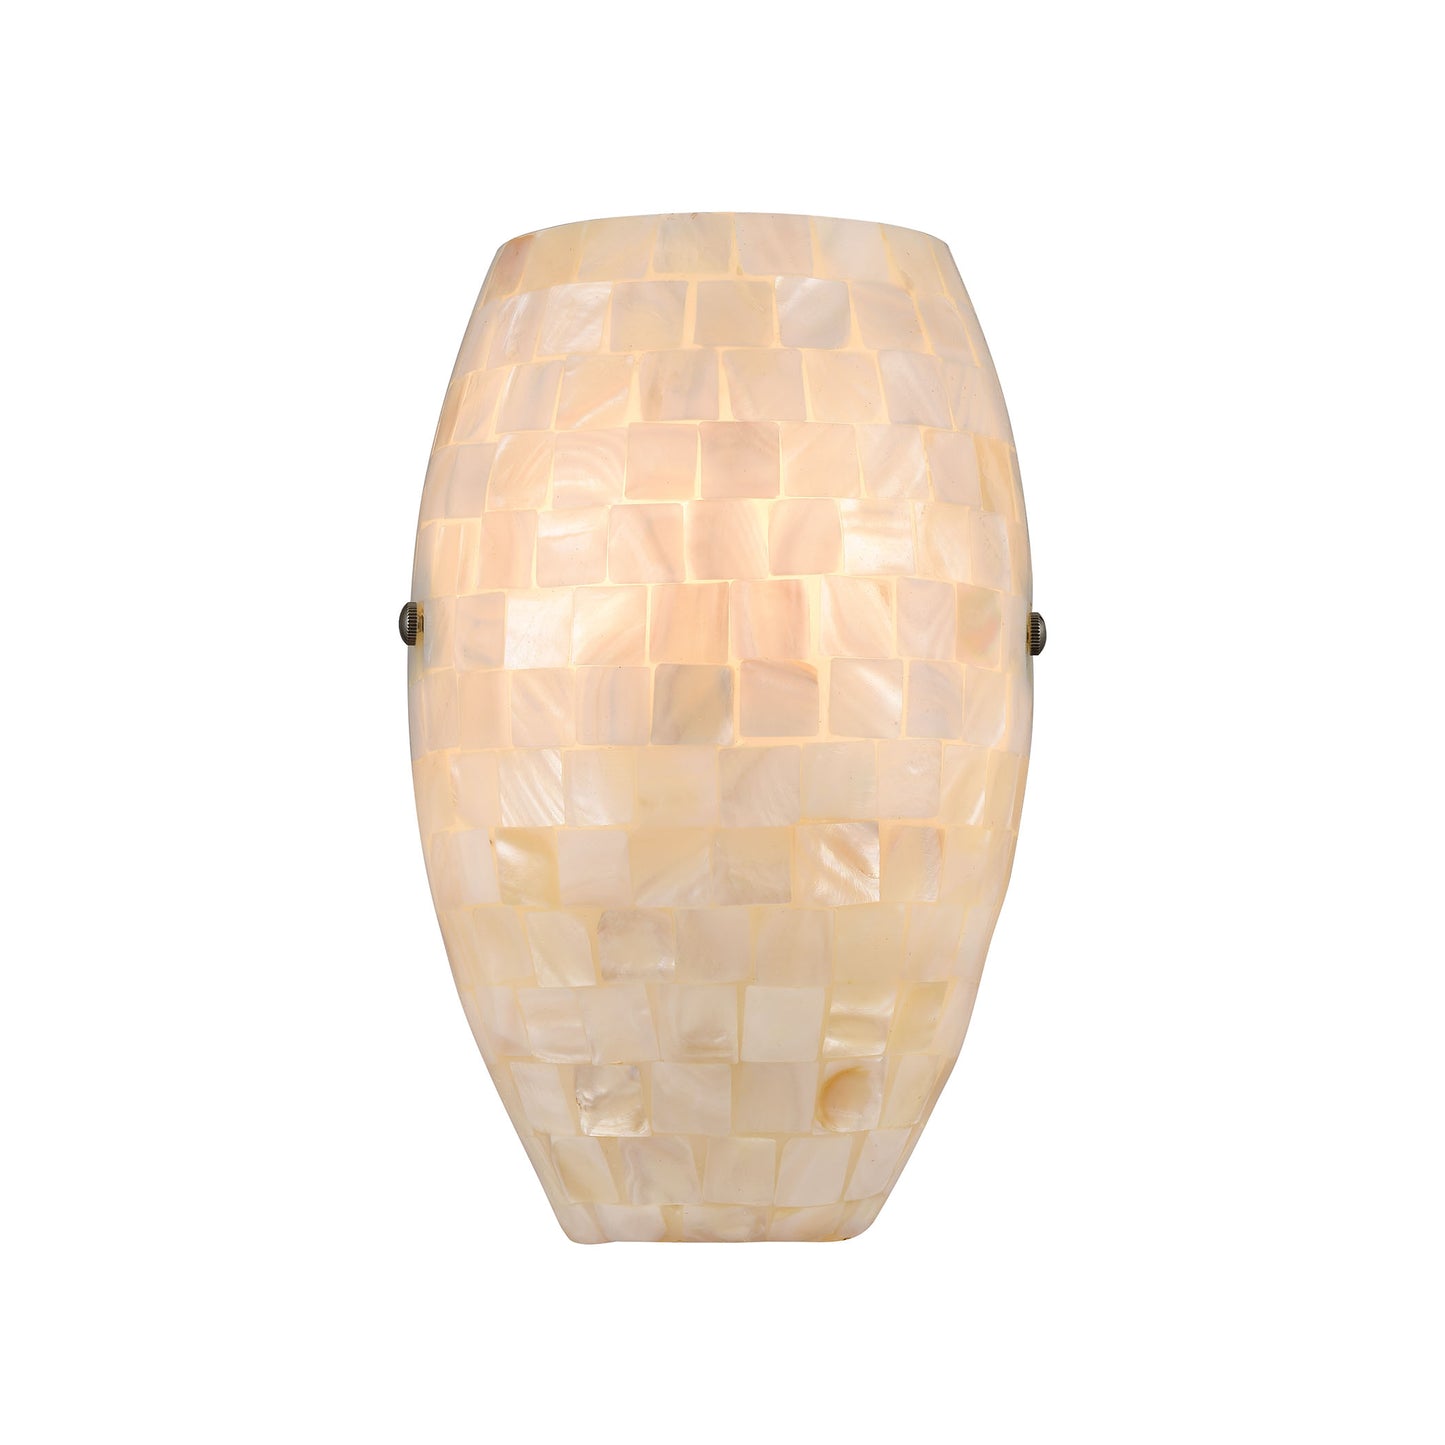 ELK Lighting 10540/1 - Capri 6" Wide 1-Light Sconce in Satin Nickel with Glass/Capiz Shells